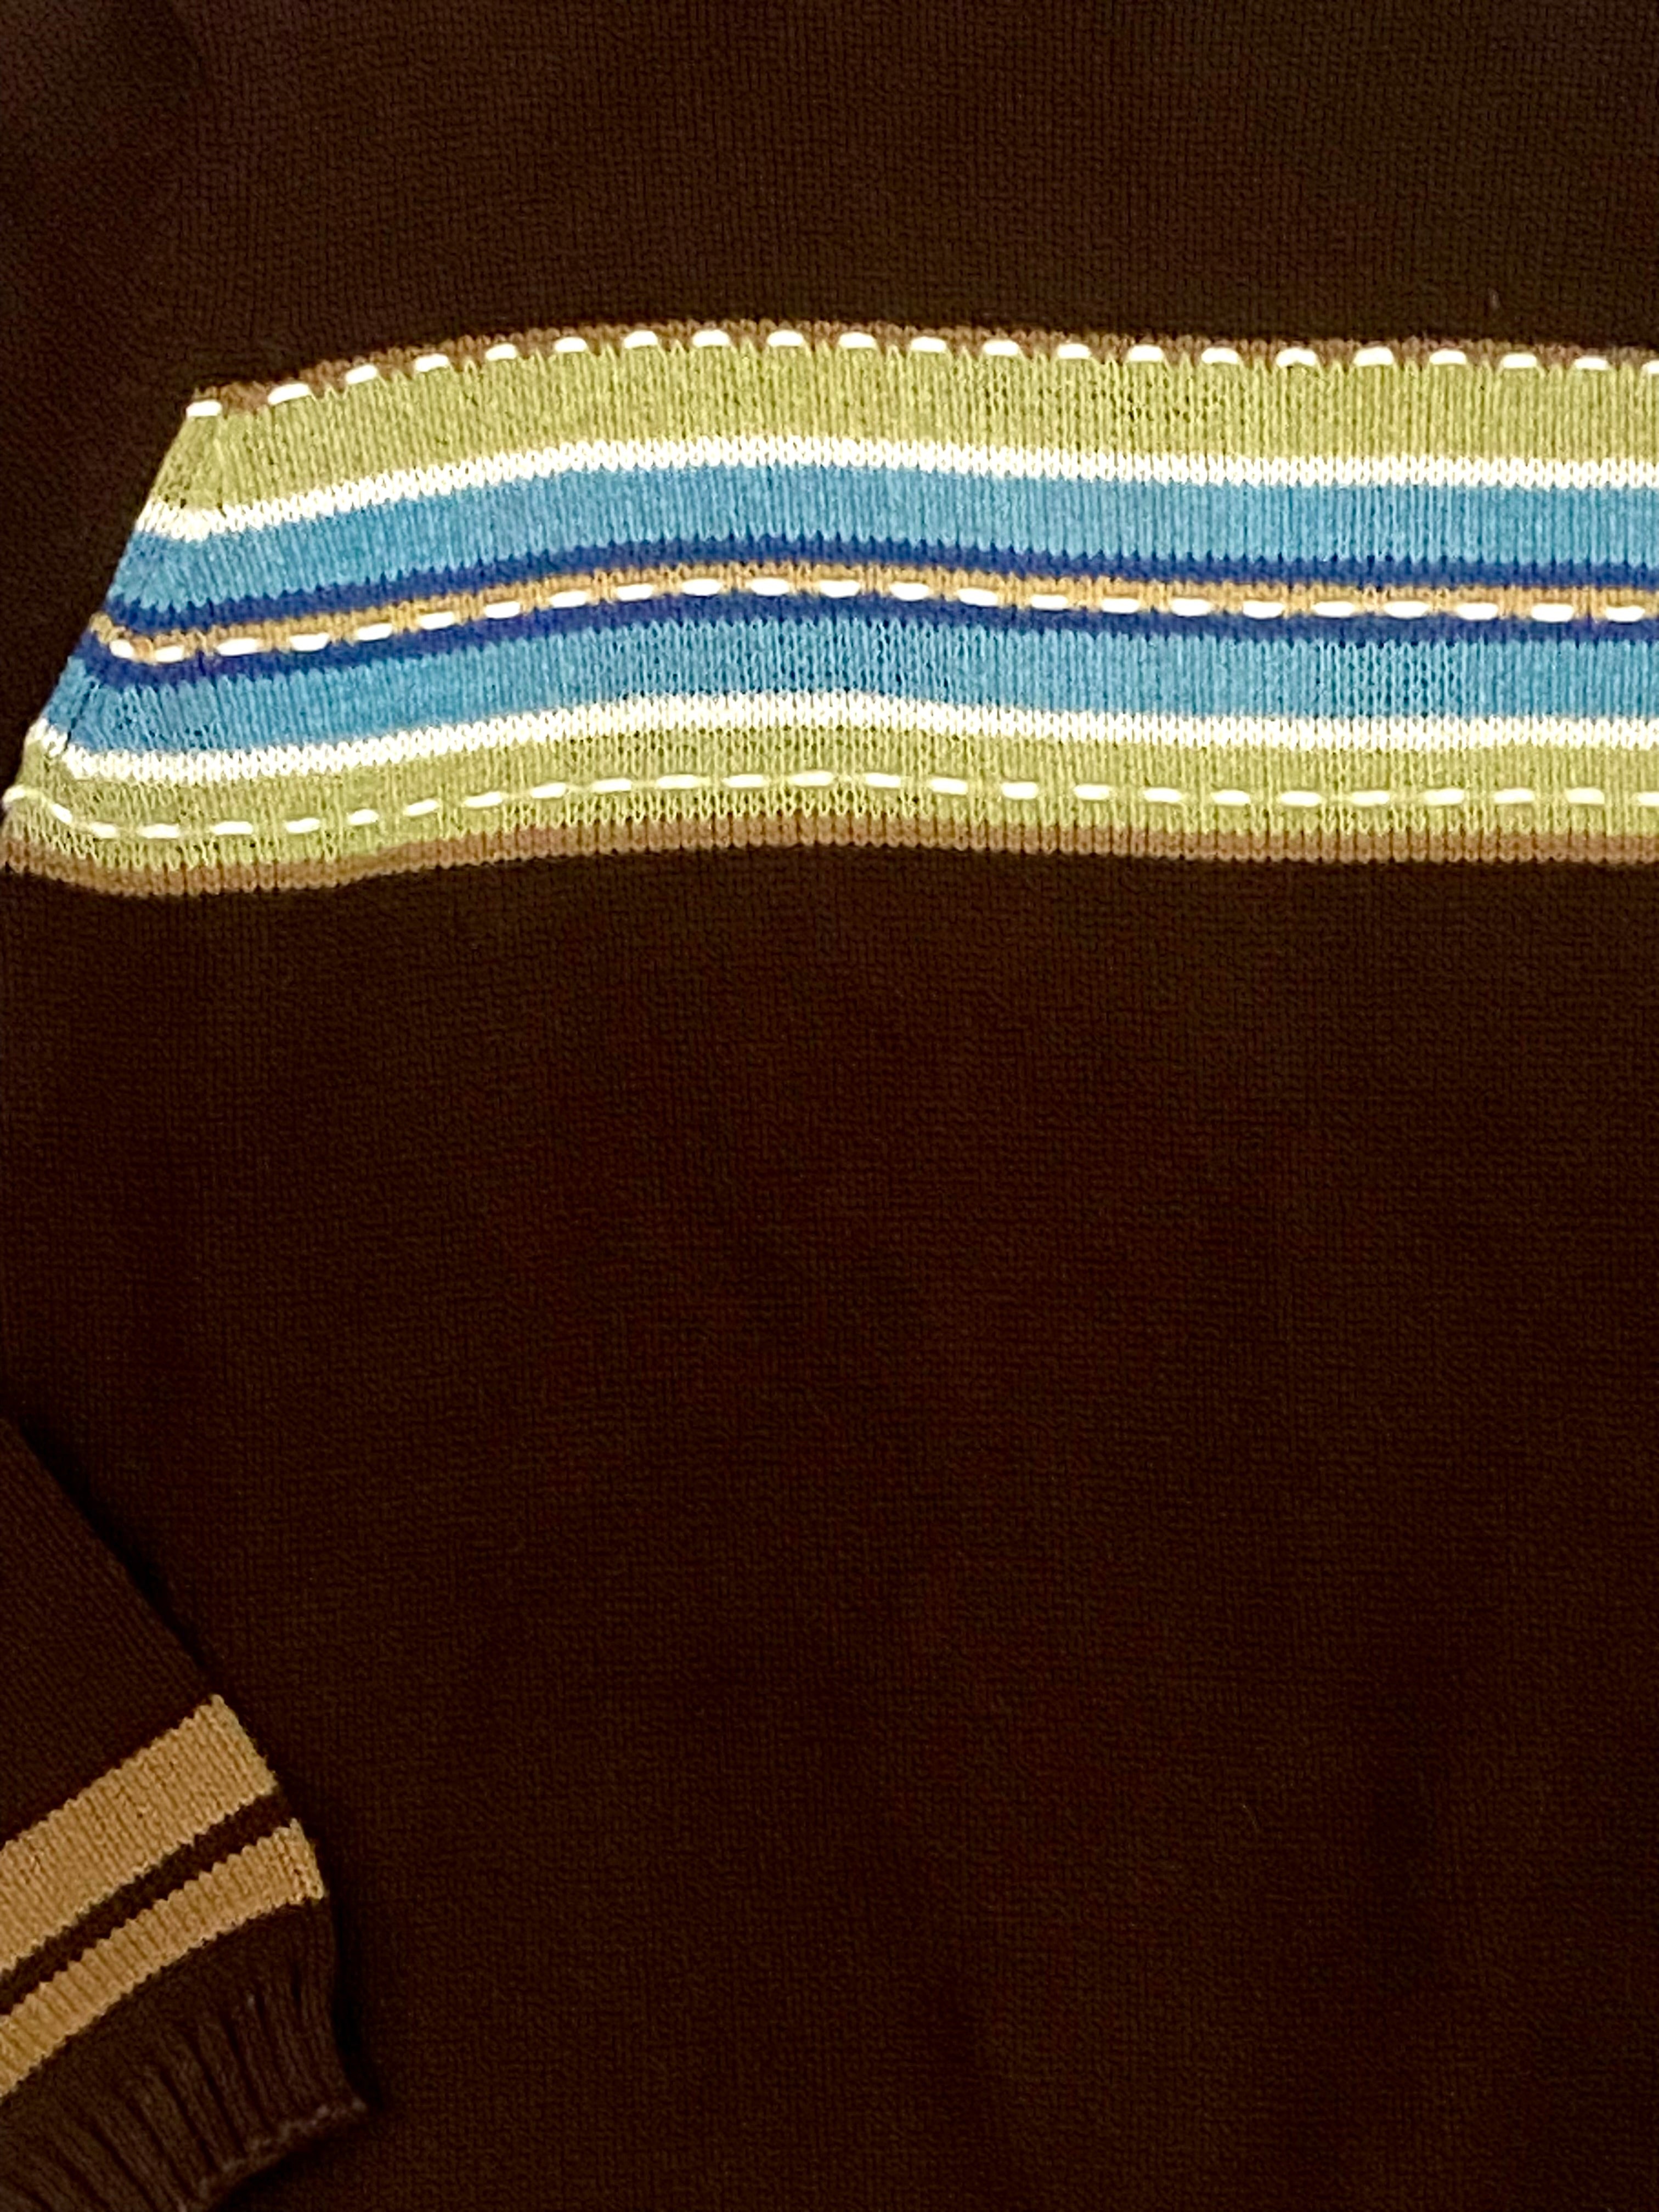 Crazy Horse Mockneck
Sweater Brown Striped